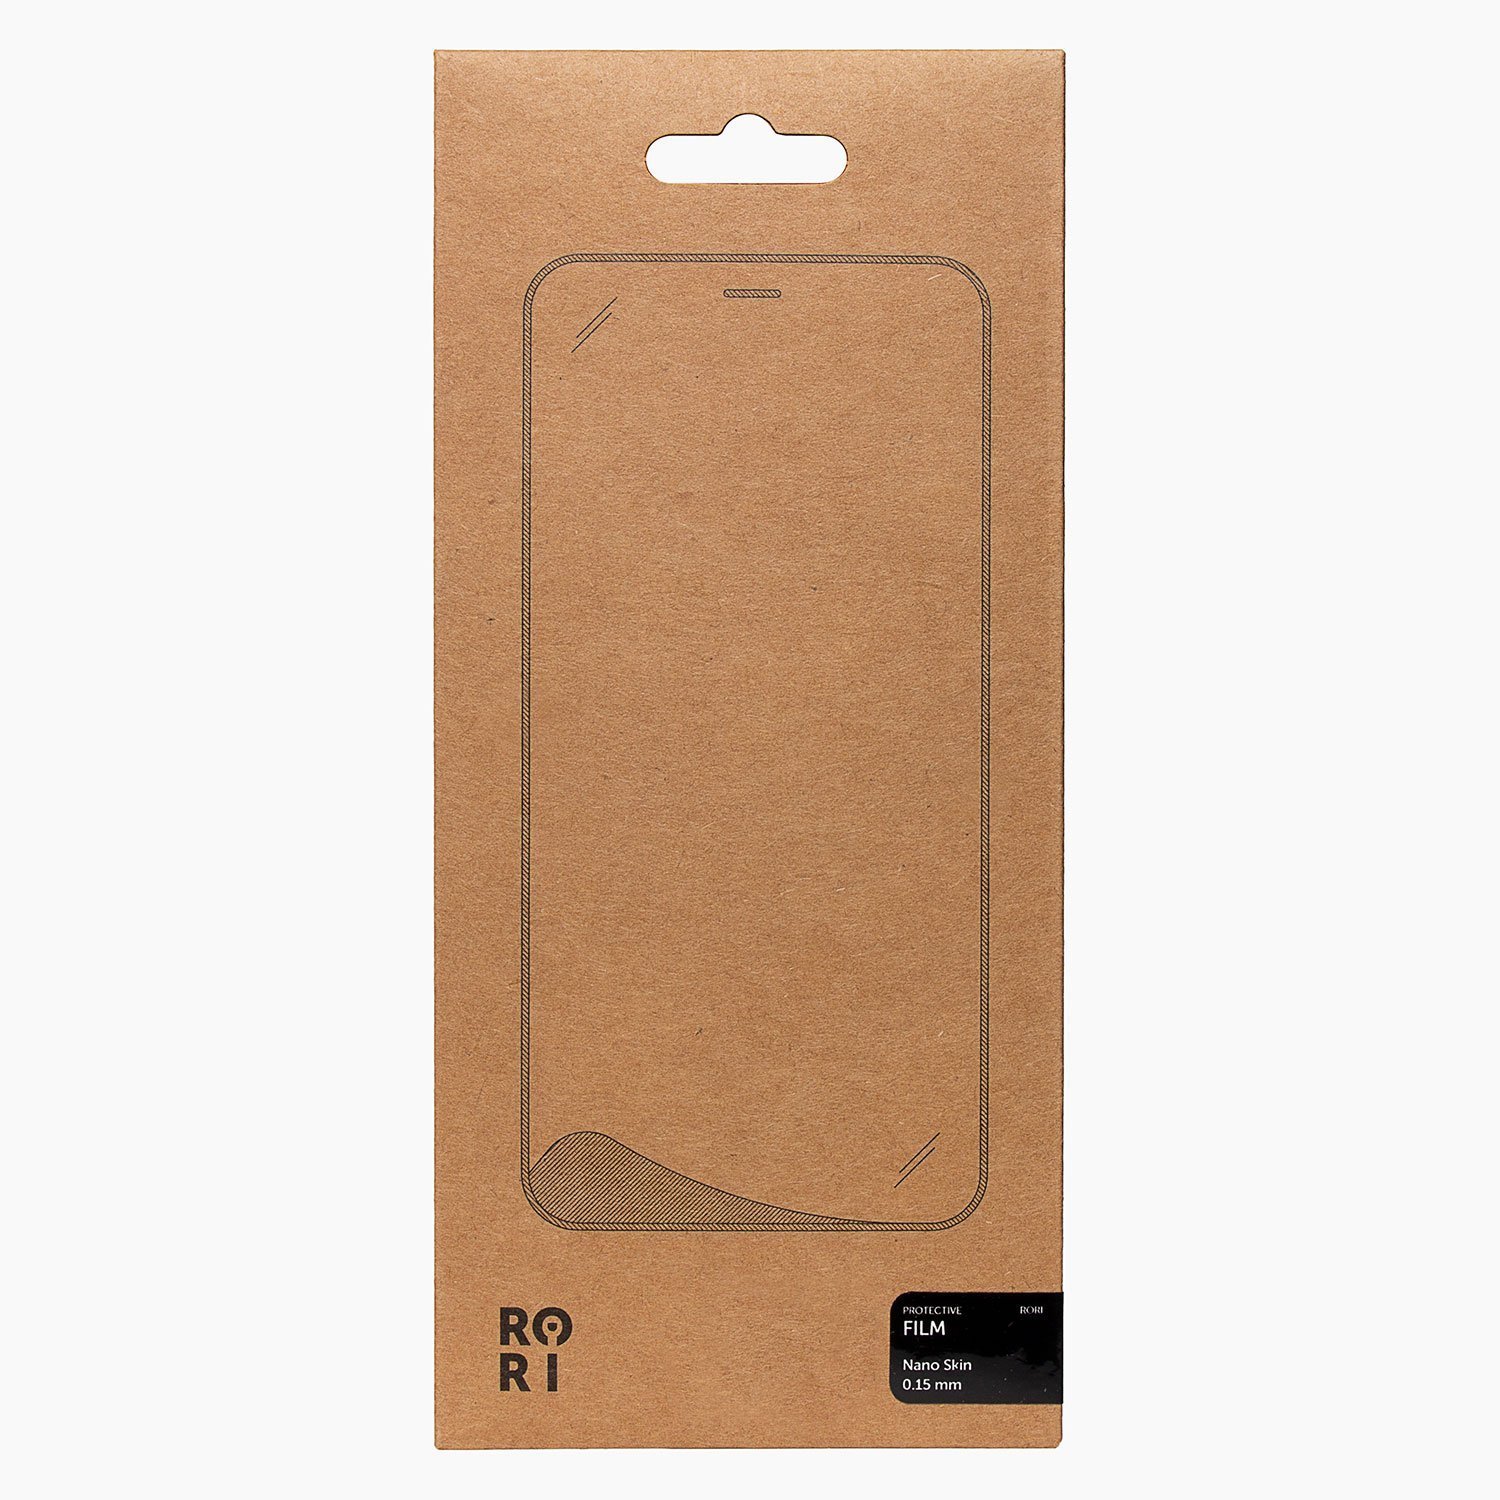 Защитная пленка Rori Polymer для экрана смартфона Huawei P40 Lite/Nova 6 SE, FullScreen, черная рамка (119519)